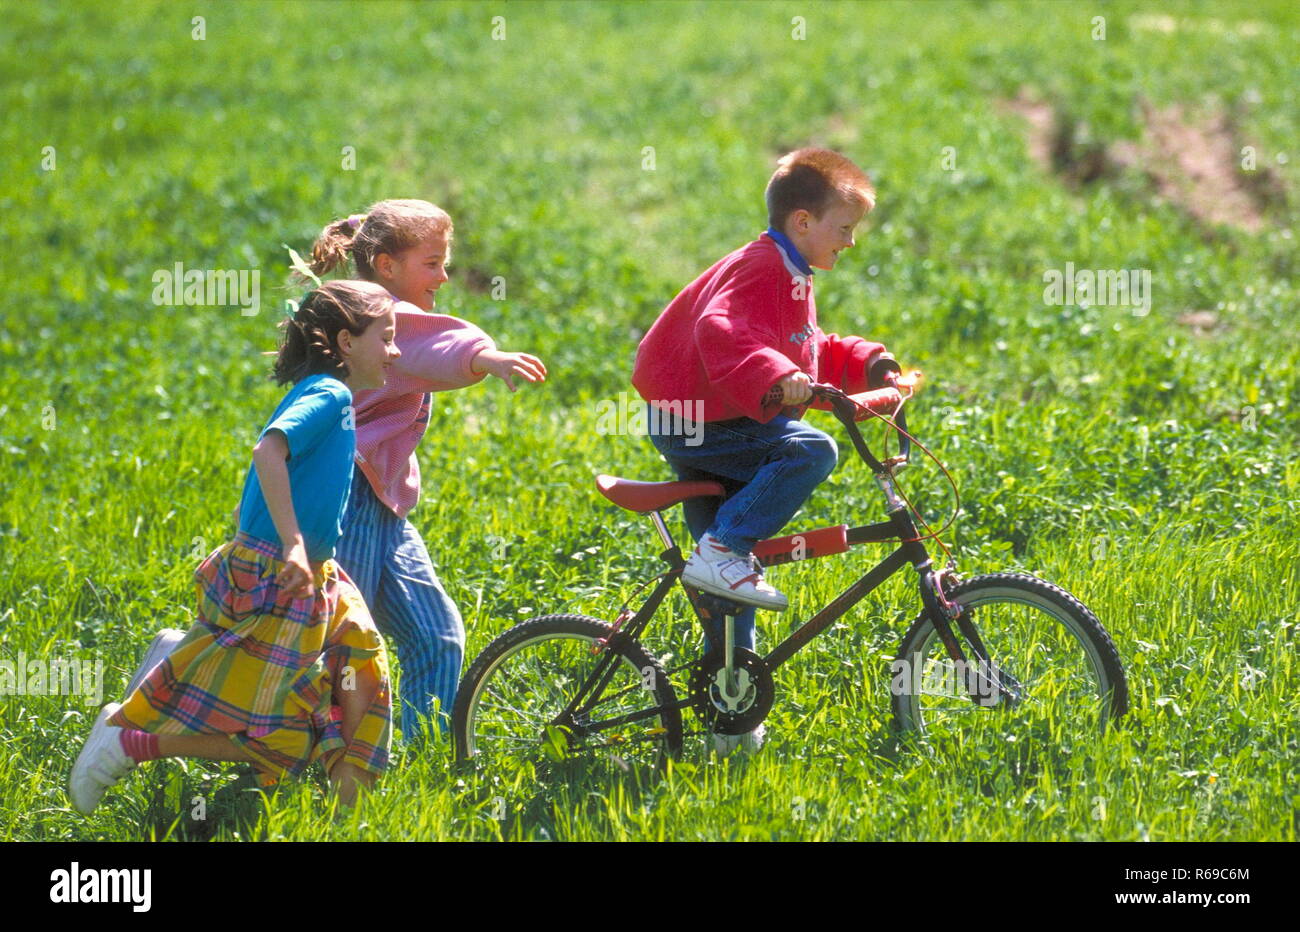 Parkszene, Gruppe von 3 Kindern im Alter von 6-10 Jahren, 2 Maedchen folgen zu Fuss einem Jungen auf dem Fahrrad durch eine Wiese Foto Stock